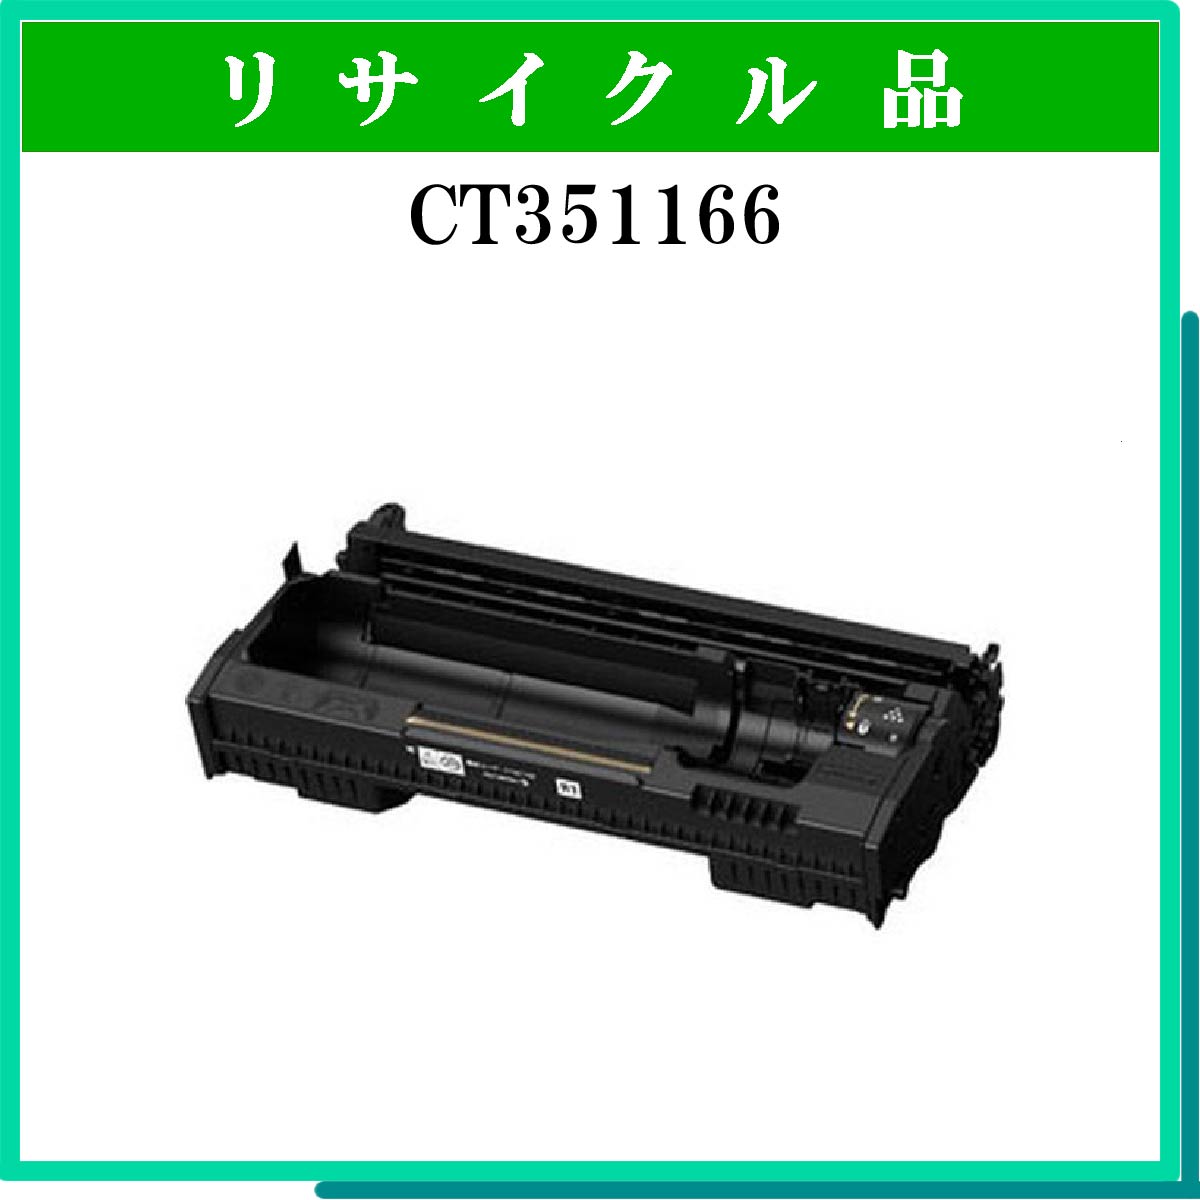 CT351166